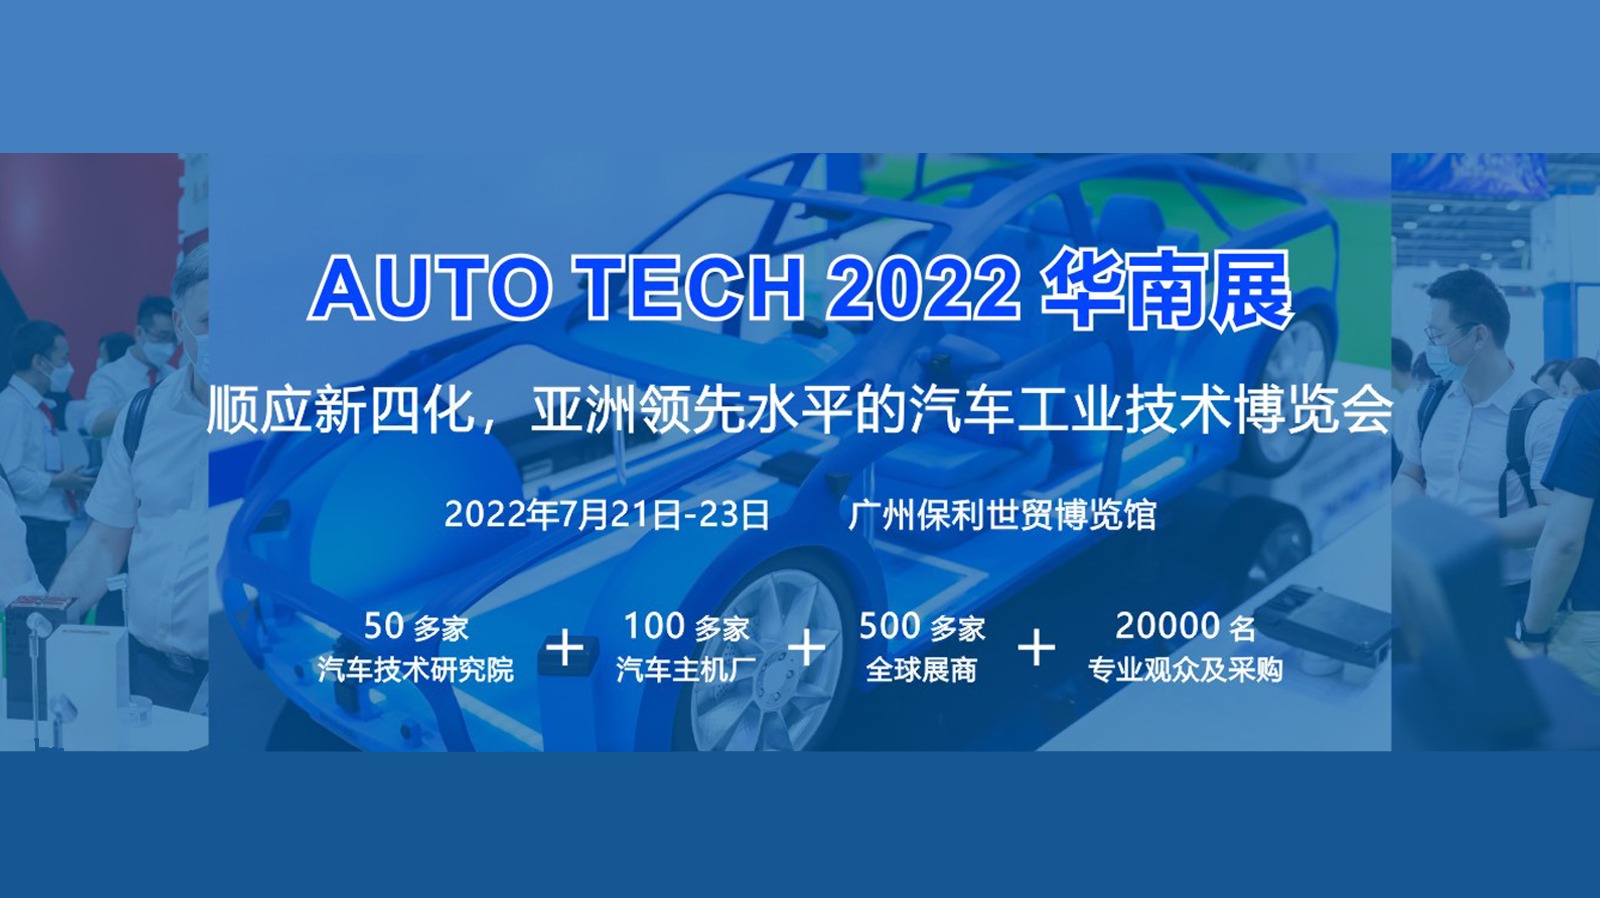 2022 第九届 AUTO TECH 国际汽车技术展览会